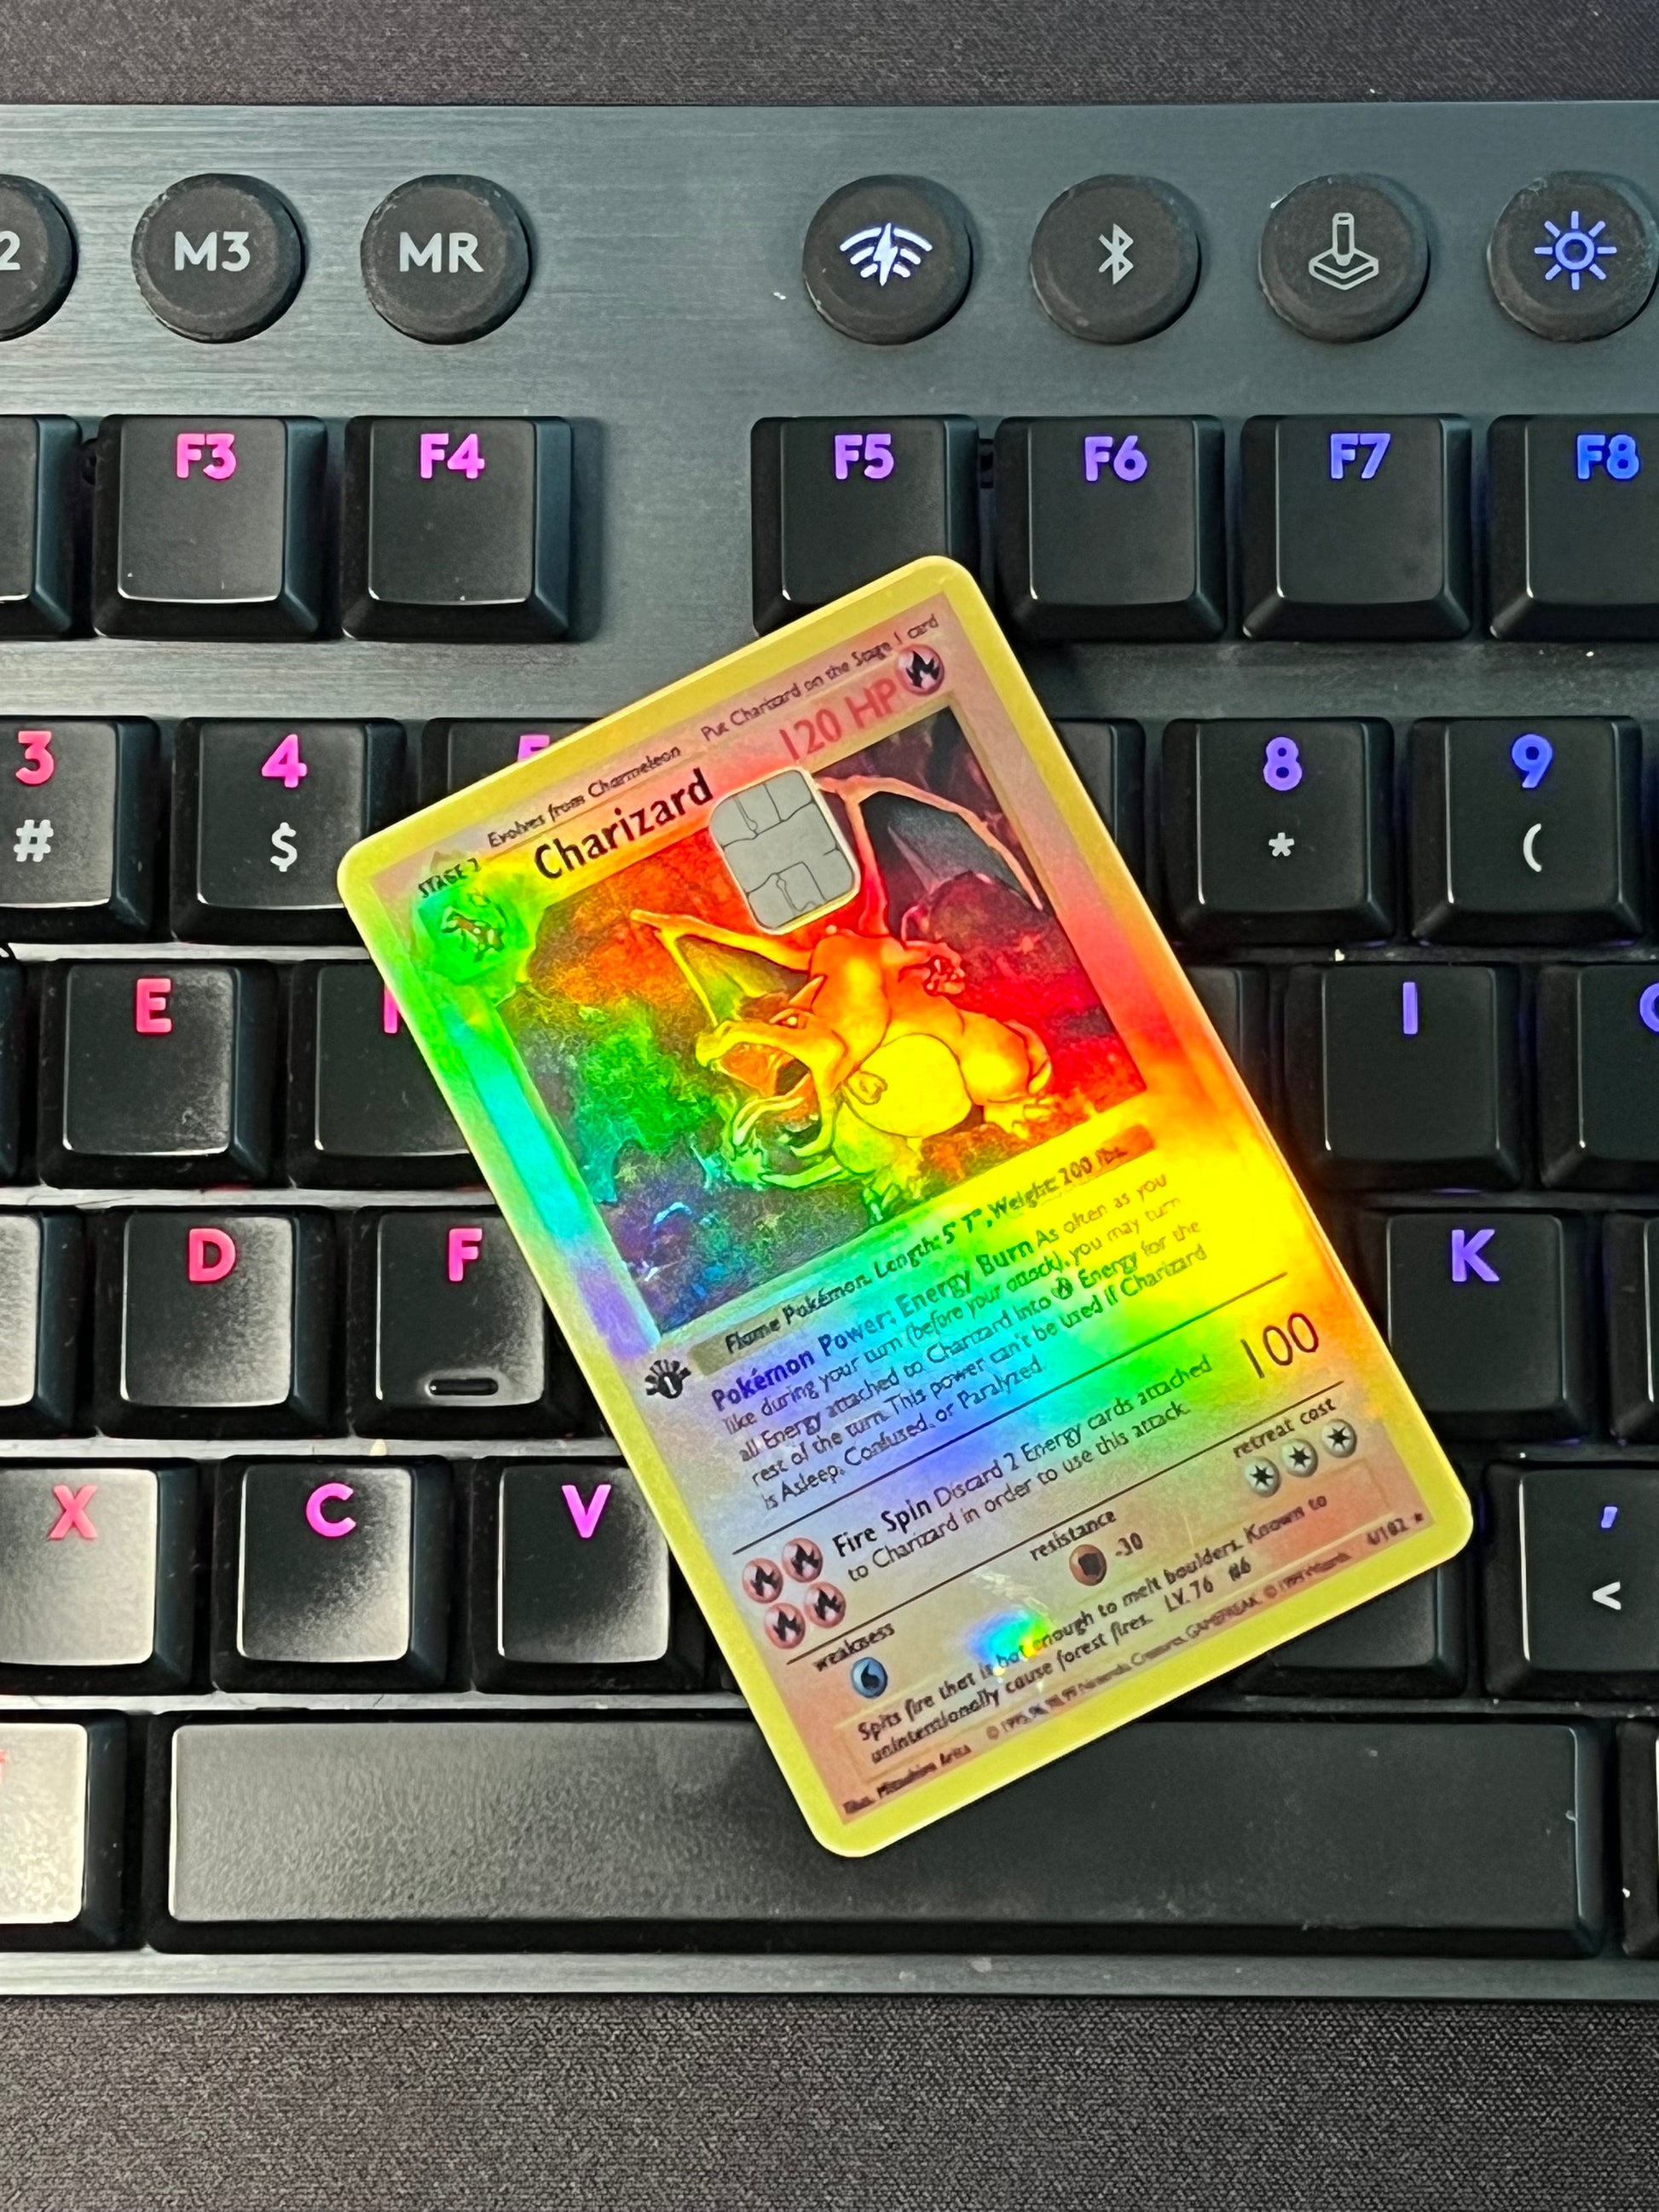 Charizard Pokemon Card Credit Card Skin